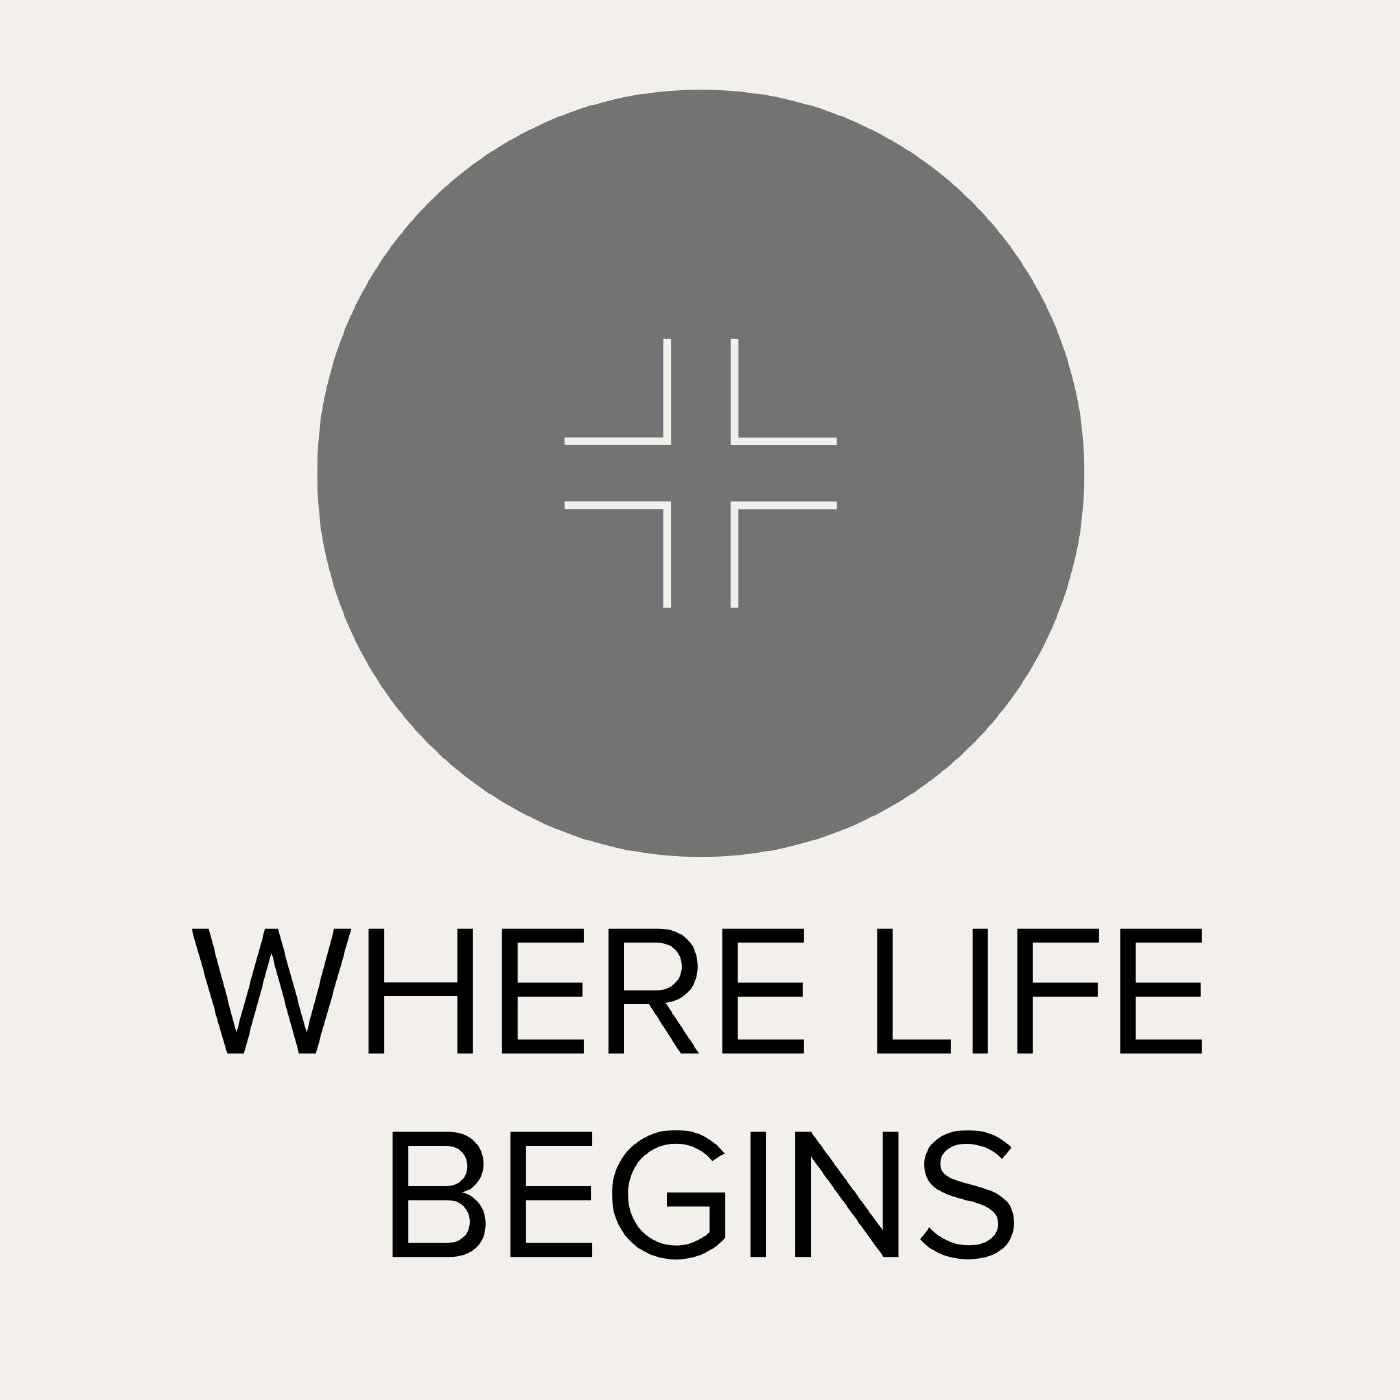 Where Life Begins (Resurrection): Easter